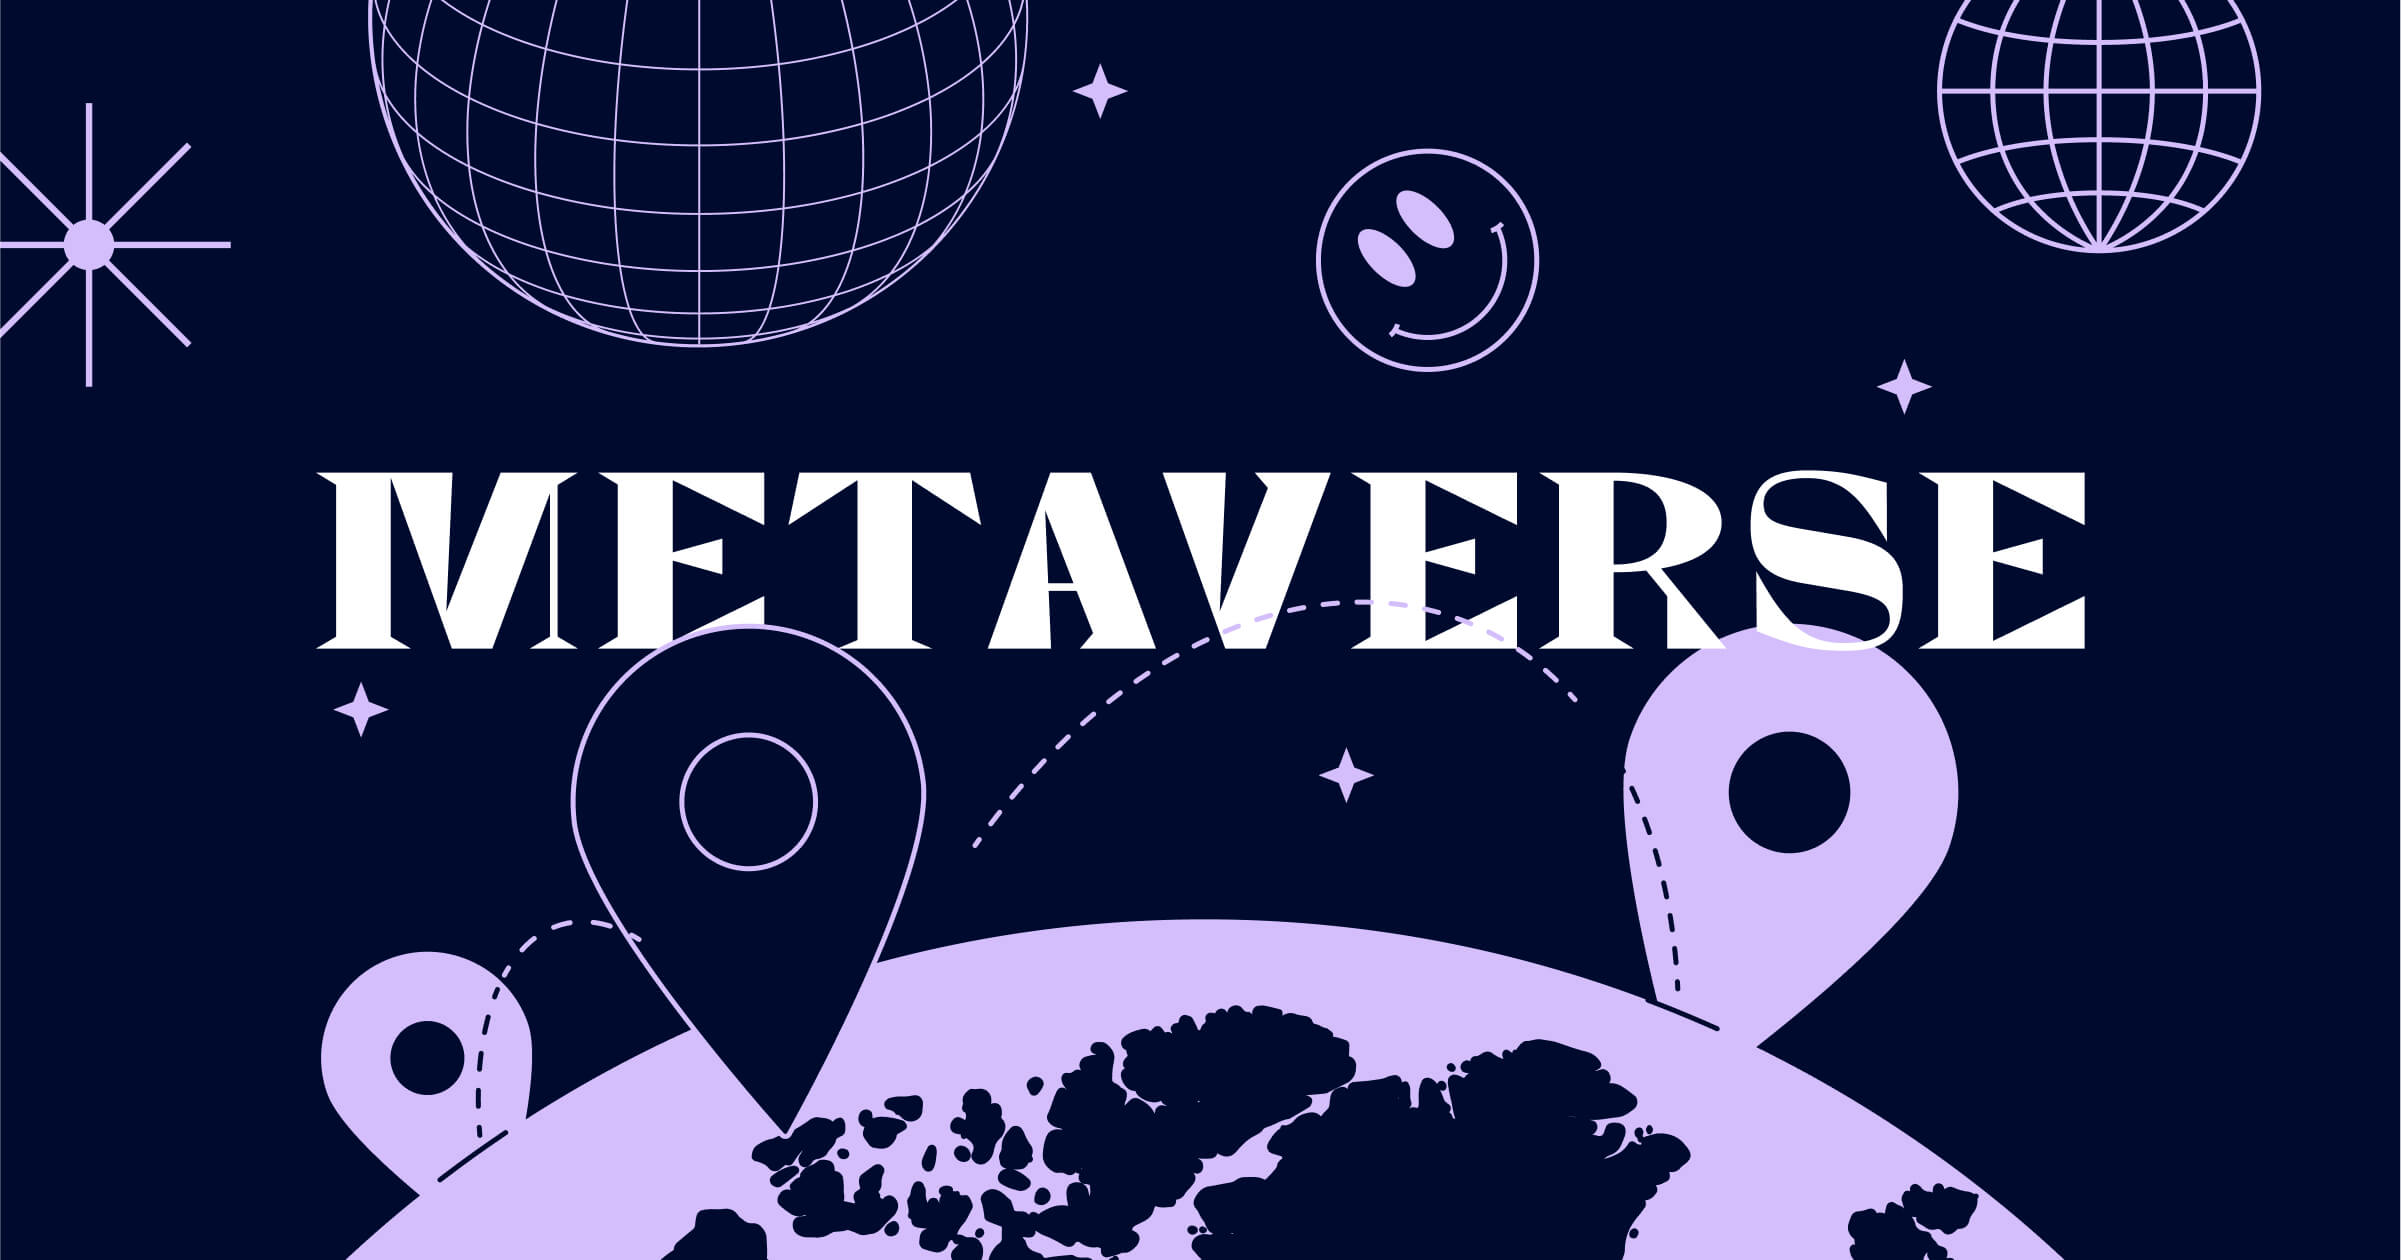 这张图片展示了深紫色背景上的“METAVERSE”字样，下方是地图和定位图标，上方有星球和网格球体，传达了虚拟宇宙的概念。